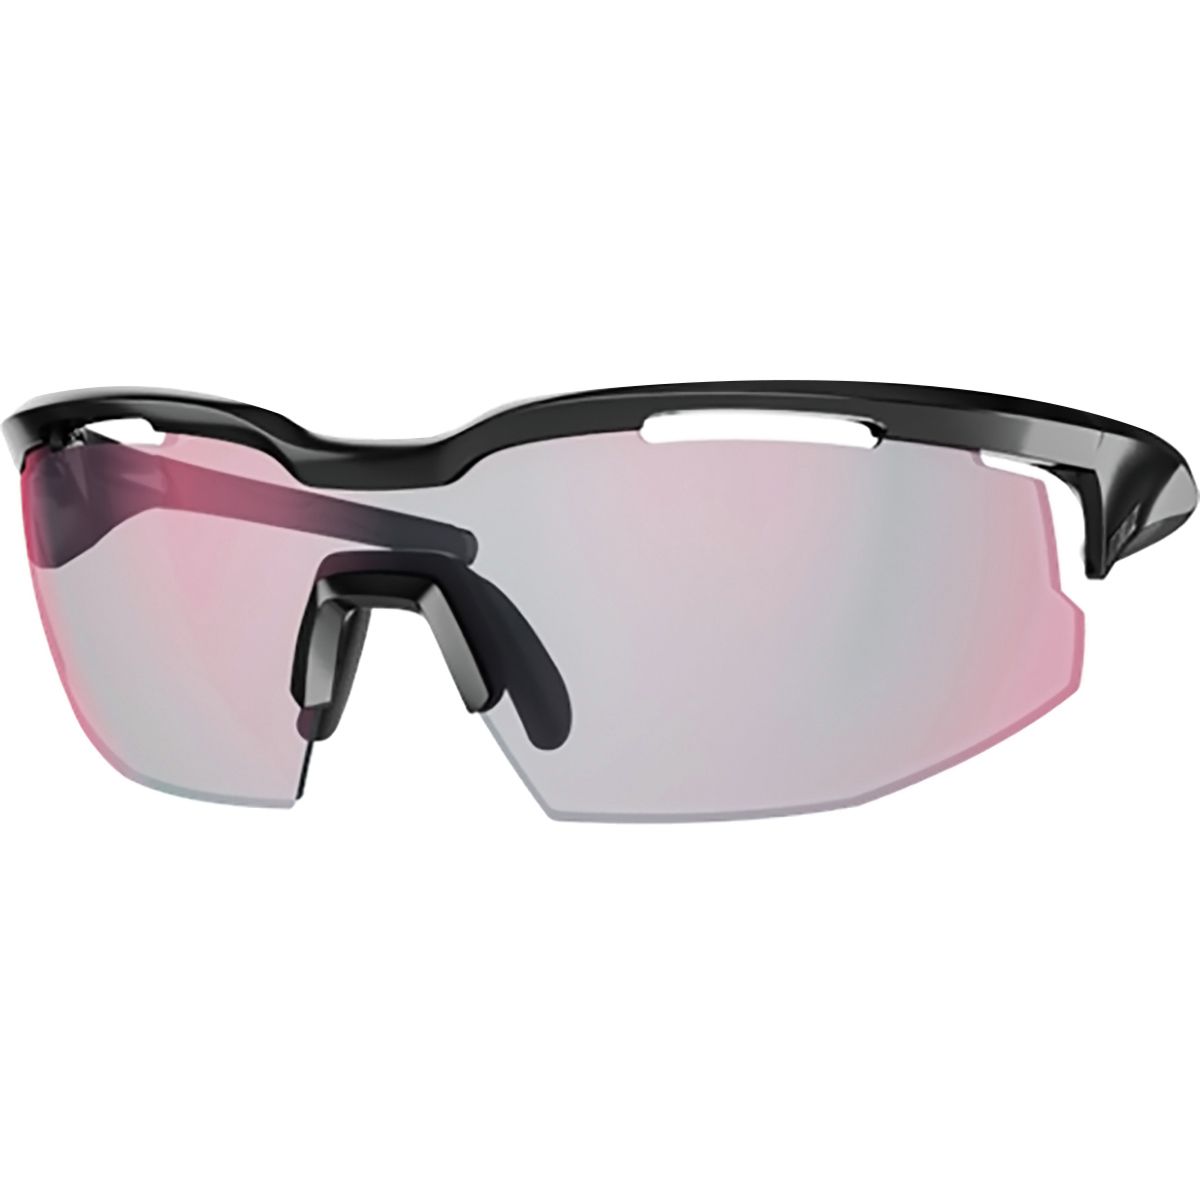 Bliz Sprint Photochromic Sunglasses - Men's